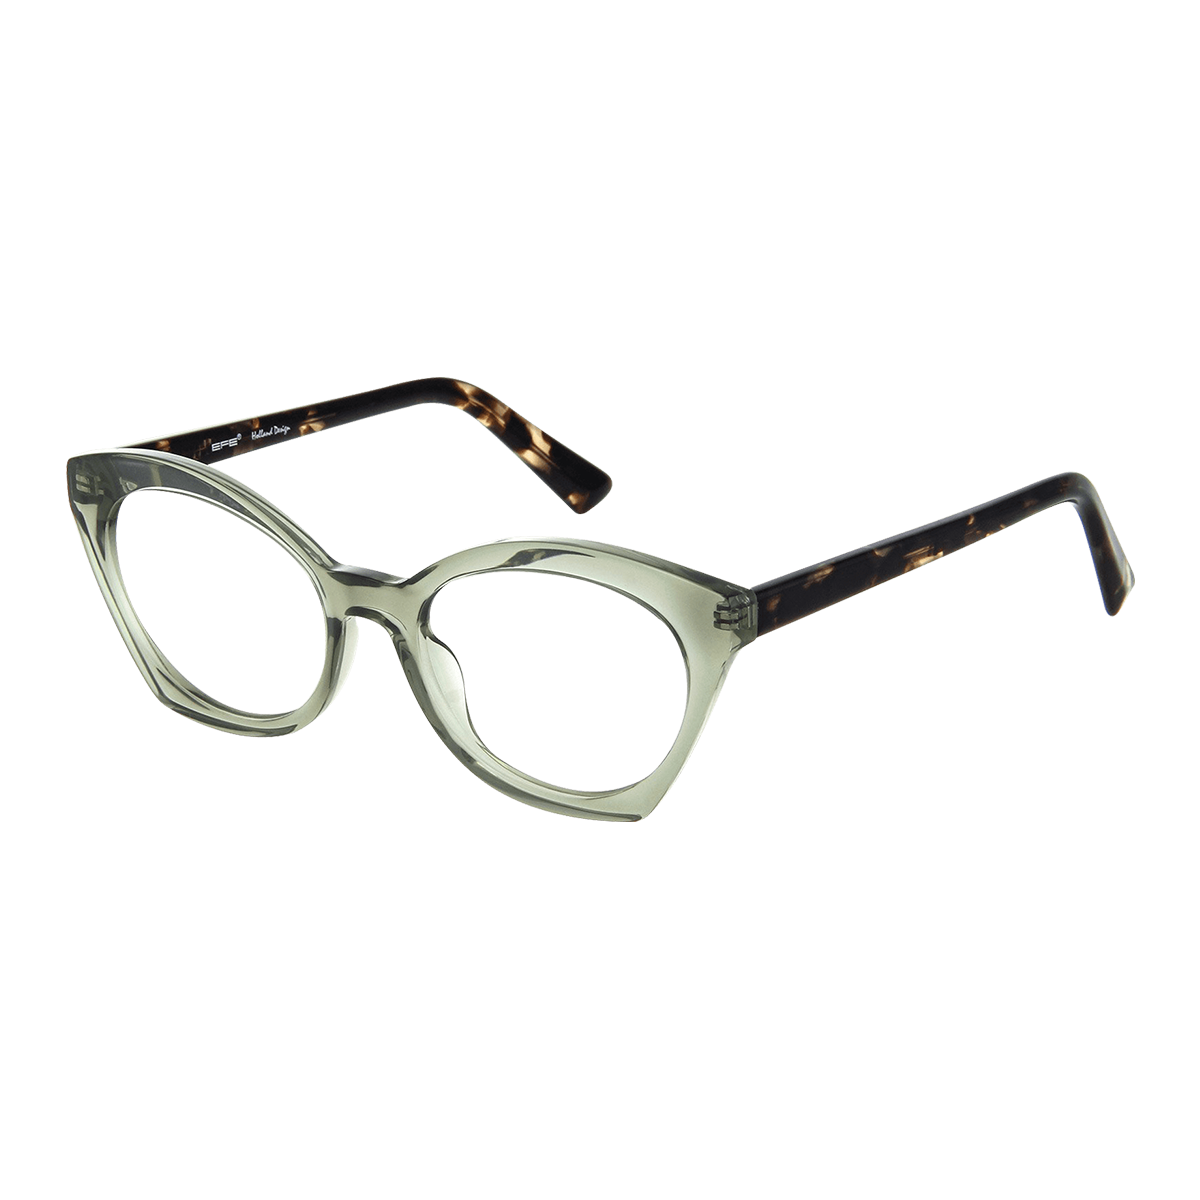 Dyras - Cat-eye Green Reading Glasses for Women